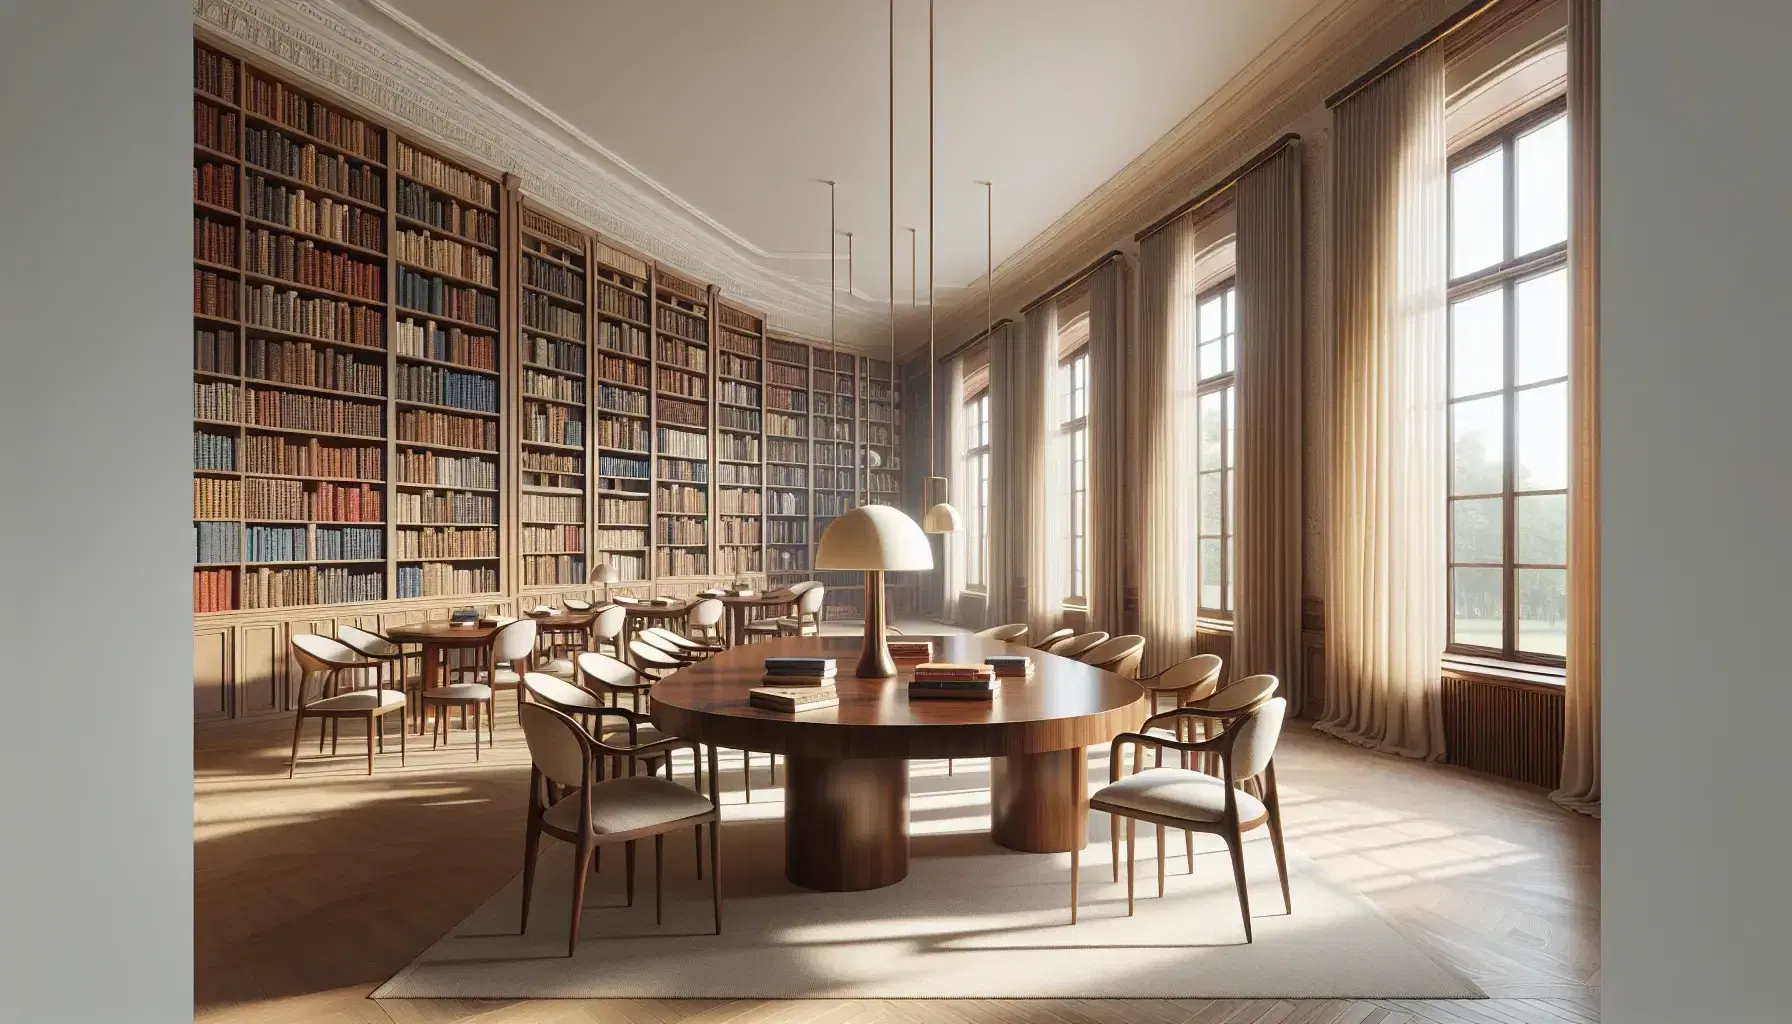 Sala de estudio elegante con mesa de madera oscura rodeada de sillas y estantería llena de libros, grandes ventanas con cortinas y balanza de justicia decorativa.